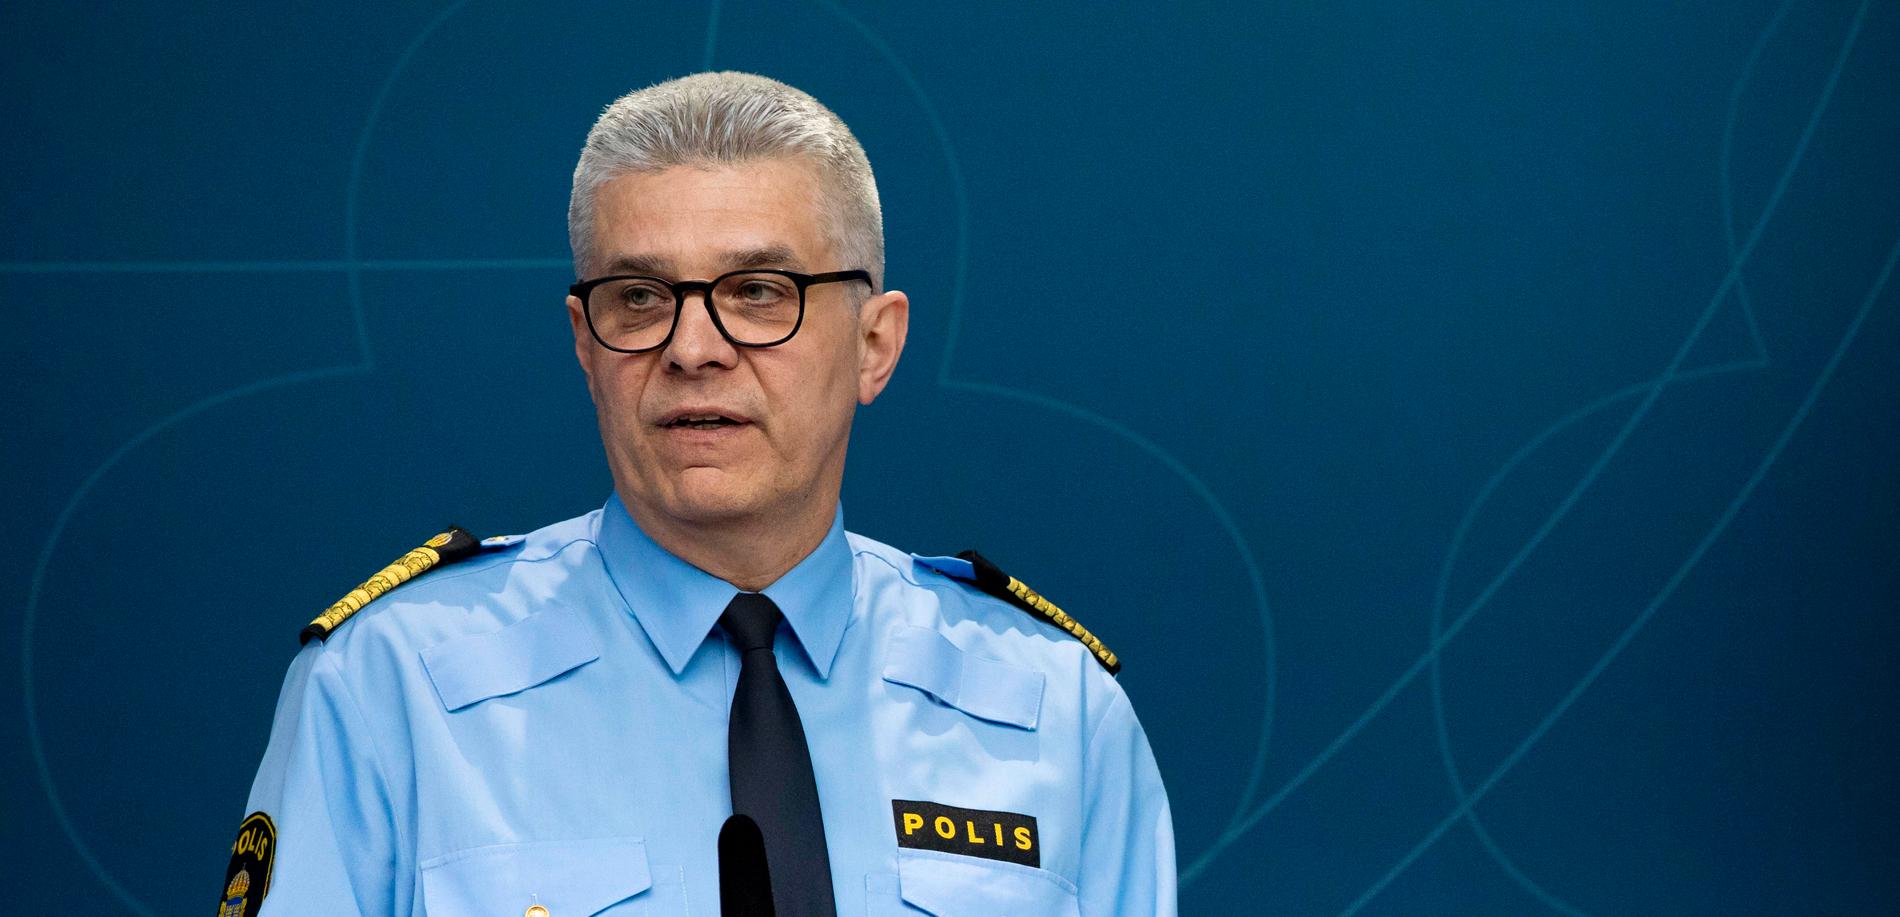 Rikspolischef Anders Thornberg fördömer våldet.